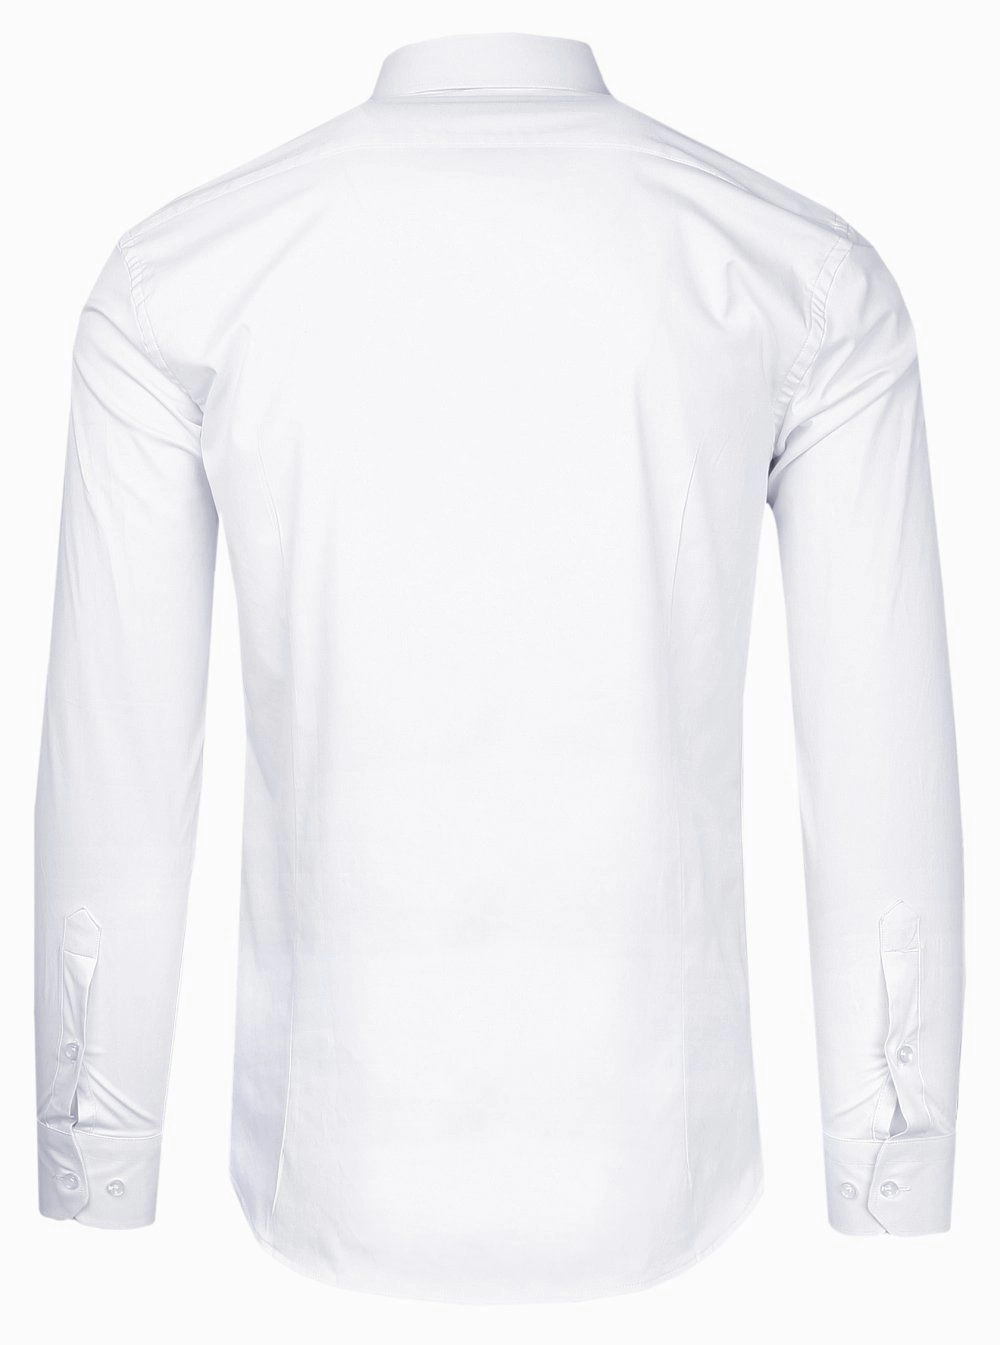 Koszula Biała z Długim Rękawem, Prosty Krój, Wizytowa, Bawełniana -VICTORIO